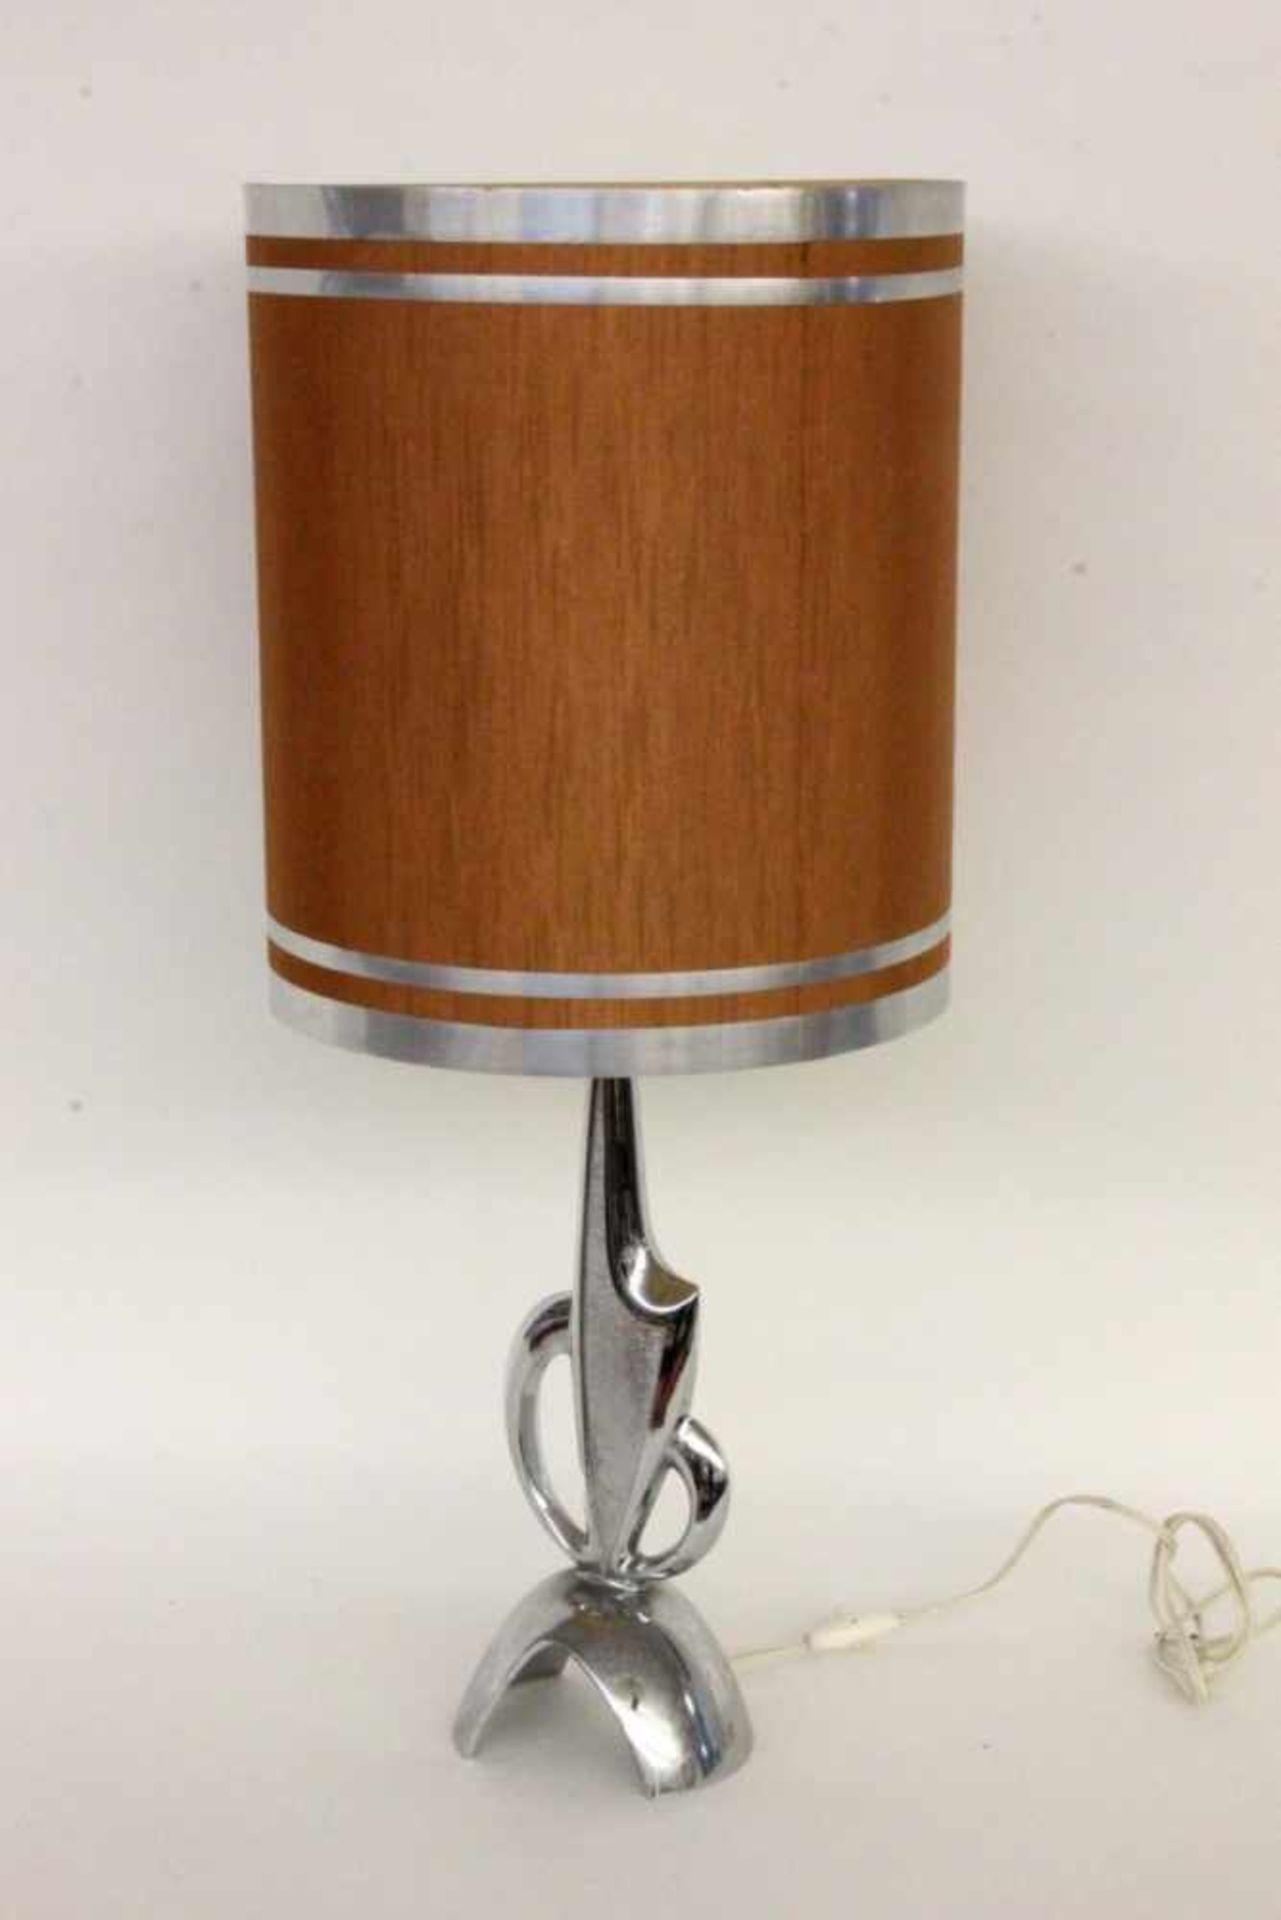 DESIGNER TISCHLAMPEVerchromter Metallfuß mit seidenbespanntem Schirm. H.71cmA DESIGNER TABLE LAMP